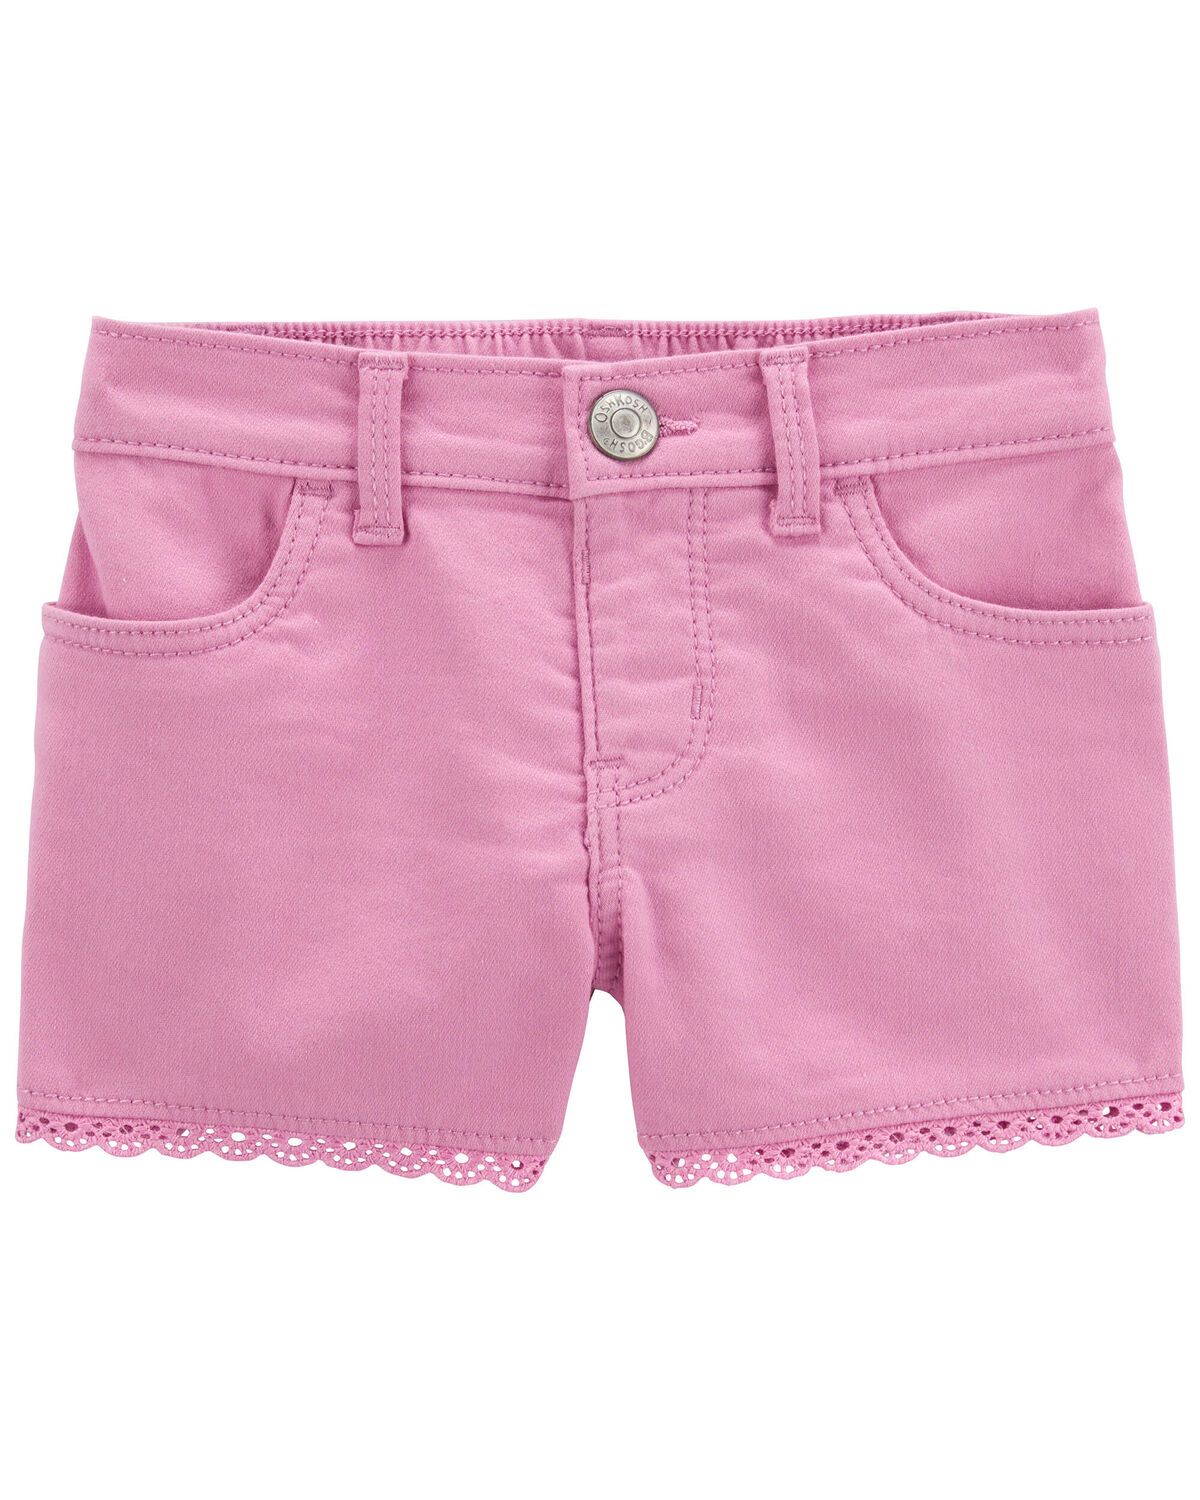 Toddler Eyelet Trim Denim Shorts | Carter's